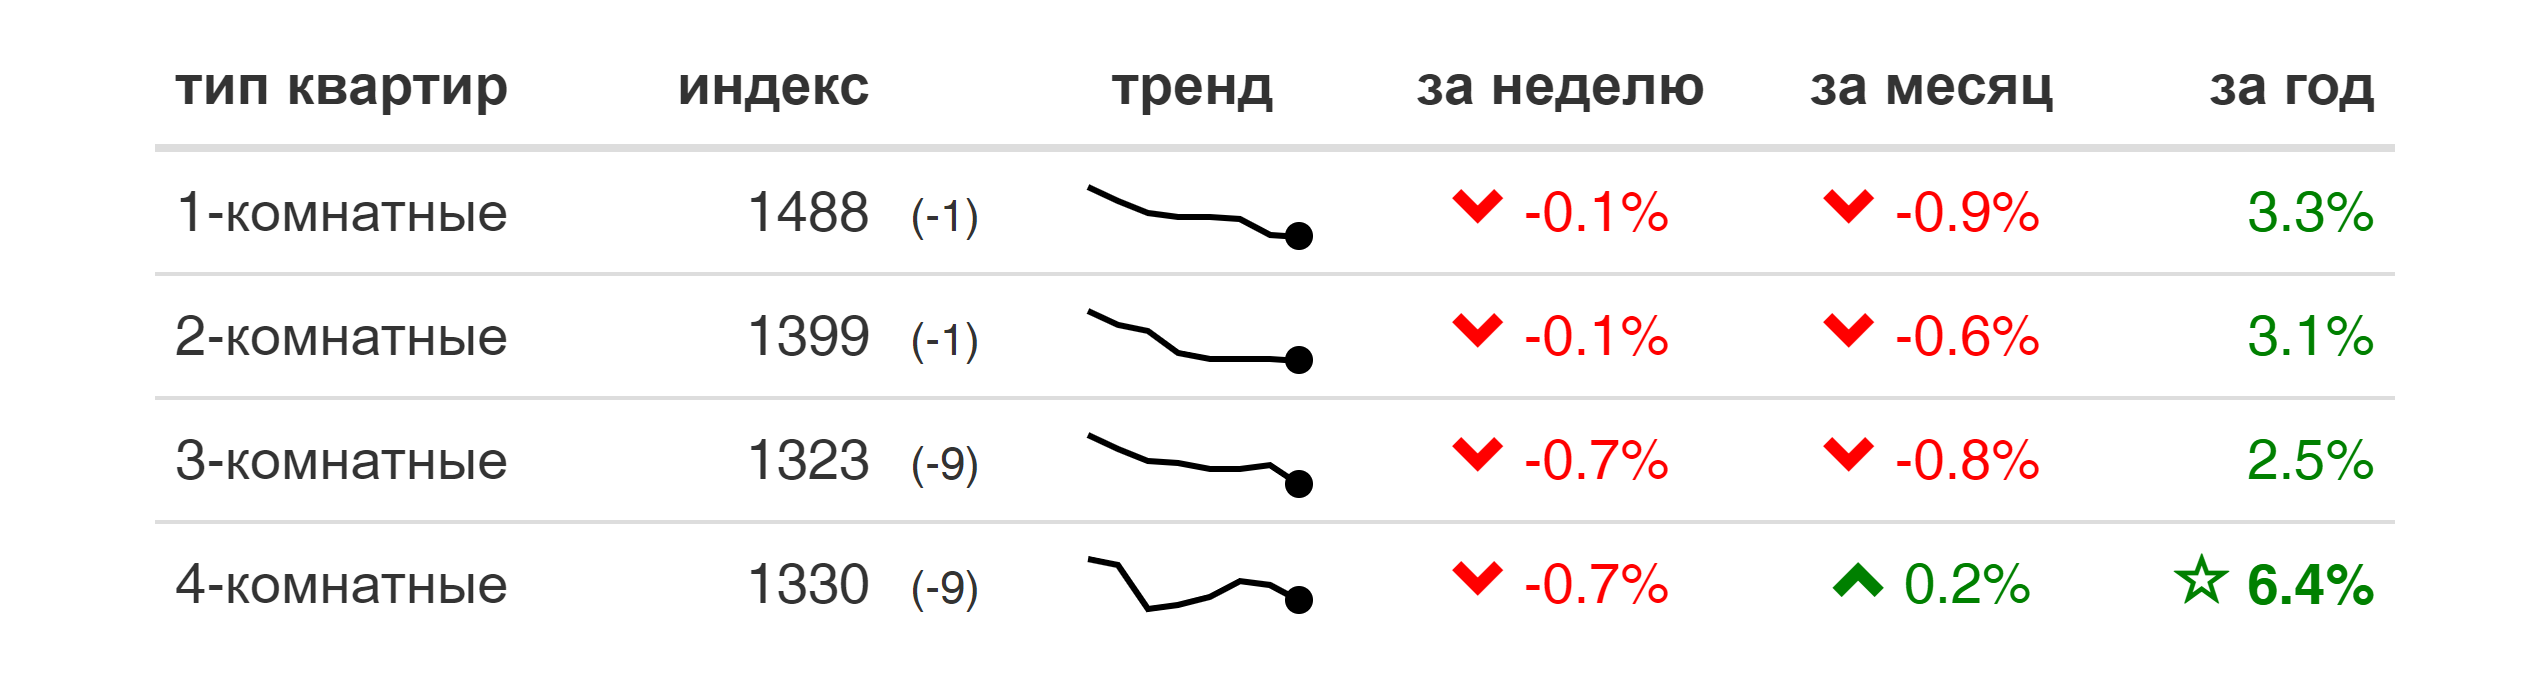 Мониторинг цен предложения квартир в Минске за 29 июня — 6 июля 2020 года